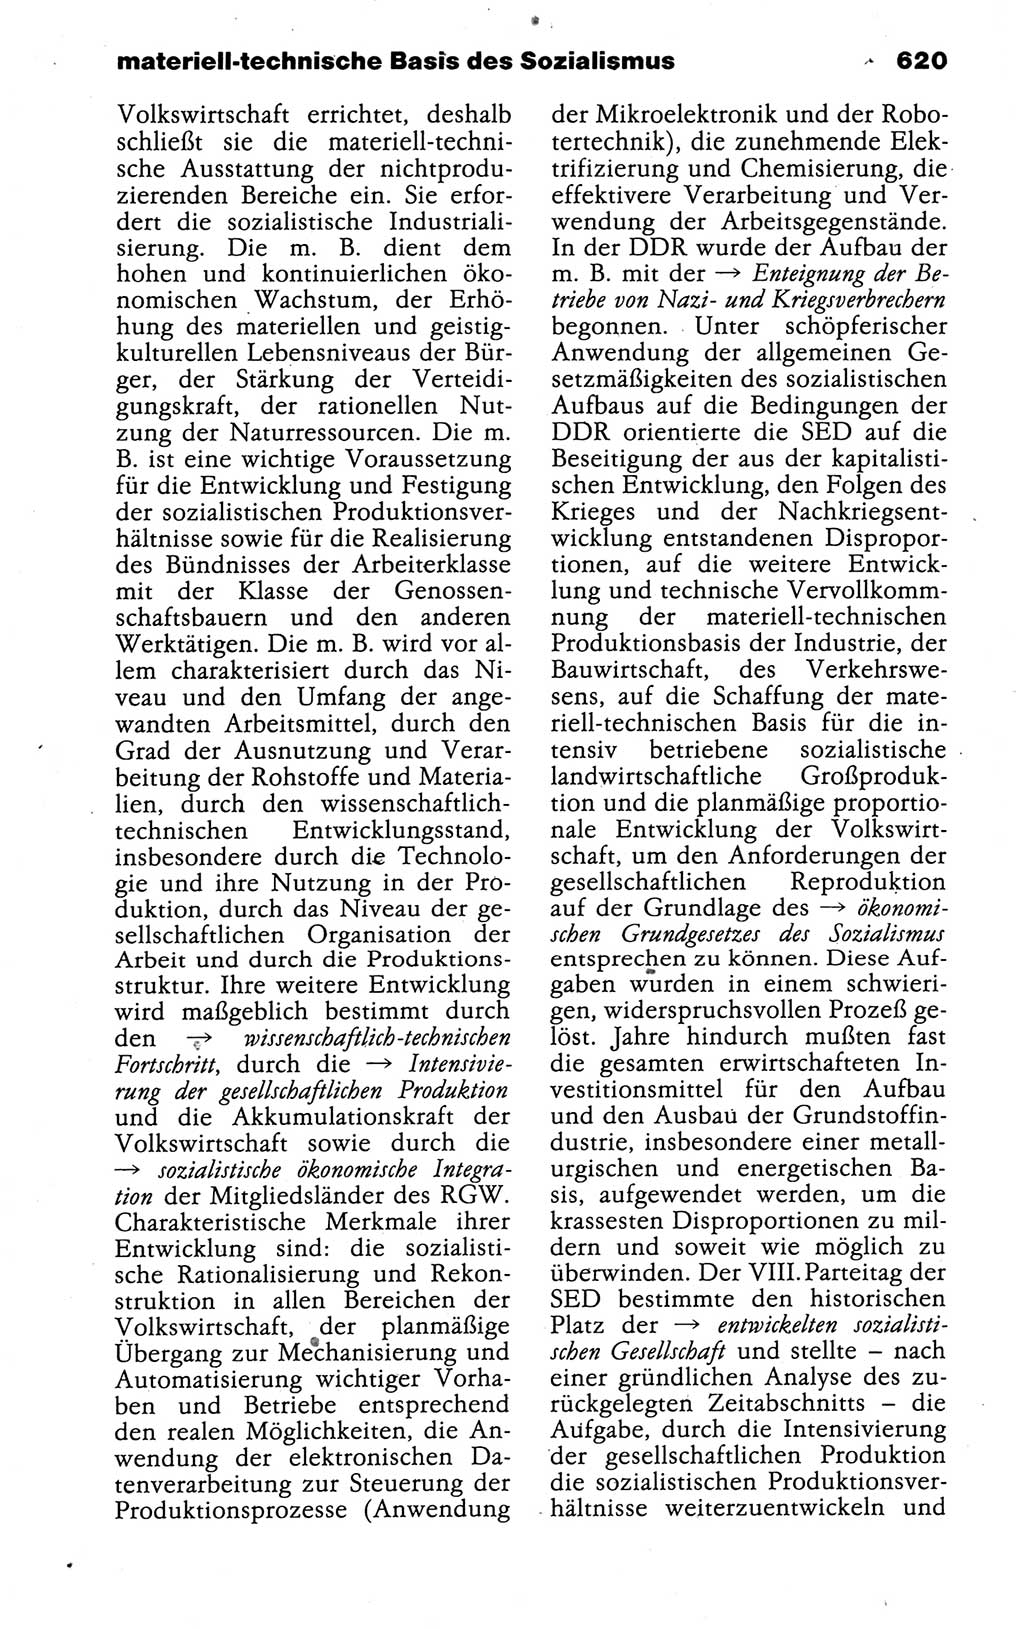 Kleines politisches Wörterbuch [Deutsche Demokratische Republik (DDR)] 1988, Seite 620 (Kl. pol. Wb. DDR 1988, S. 620)